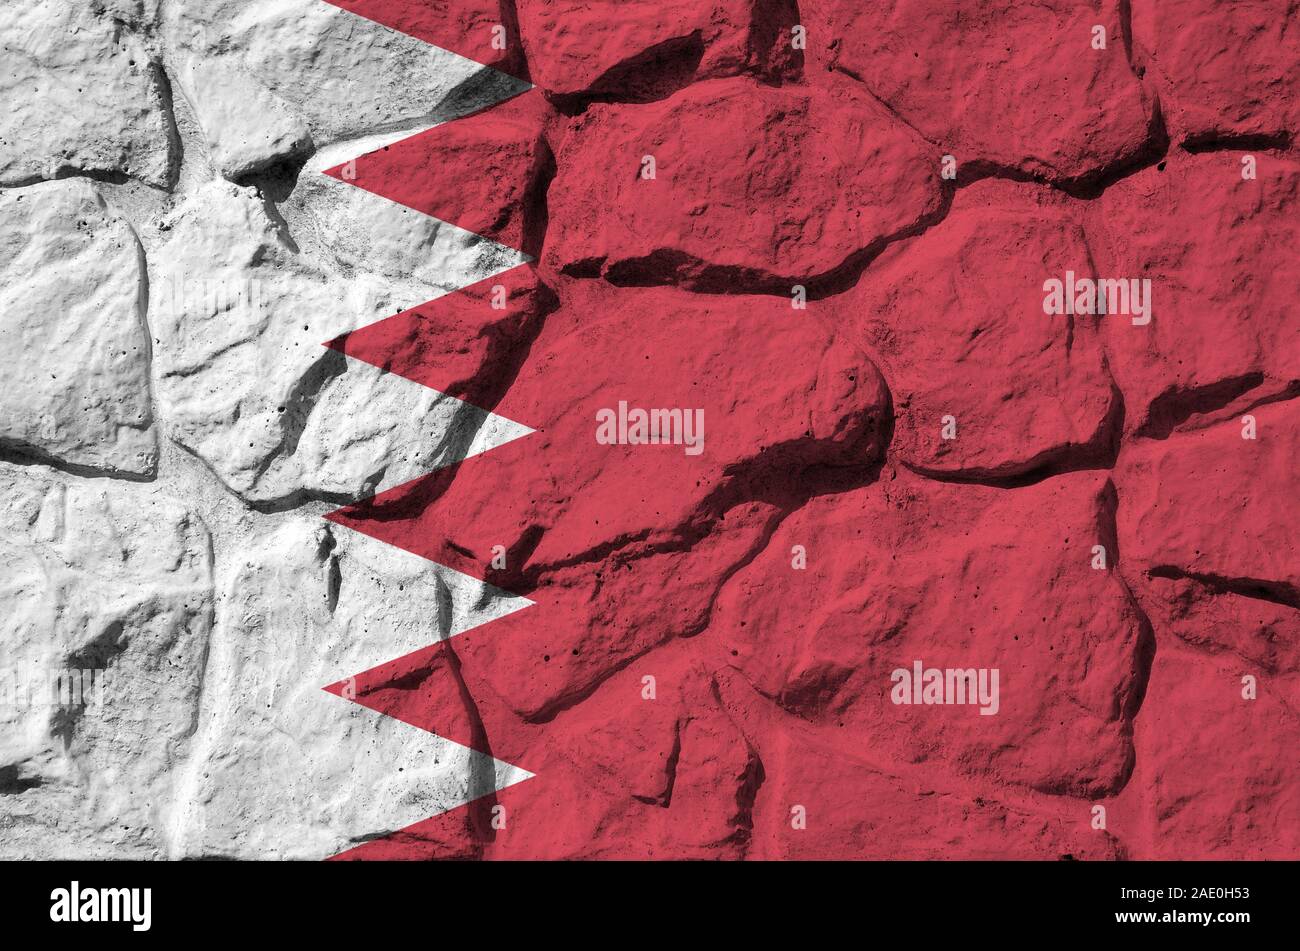 Drapeau Bahreïn représentés dans des couleurs de peinture sur vieux mur de pierre close up. Bannière texturé sur rock wall background Banque D'Images